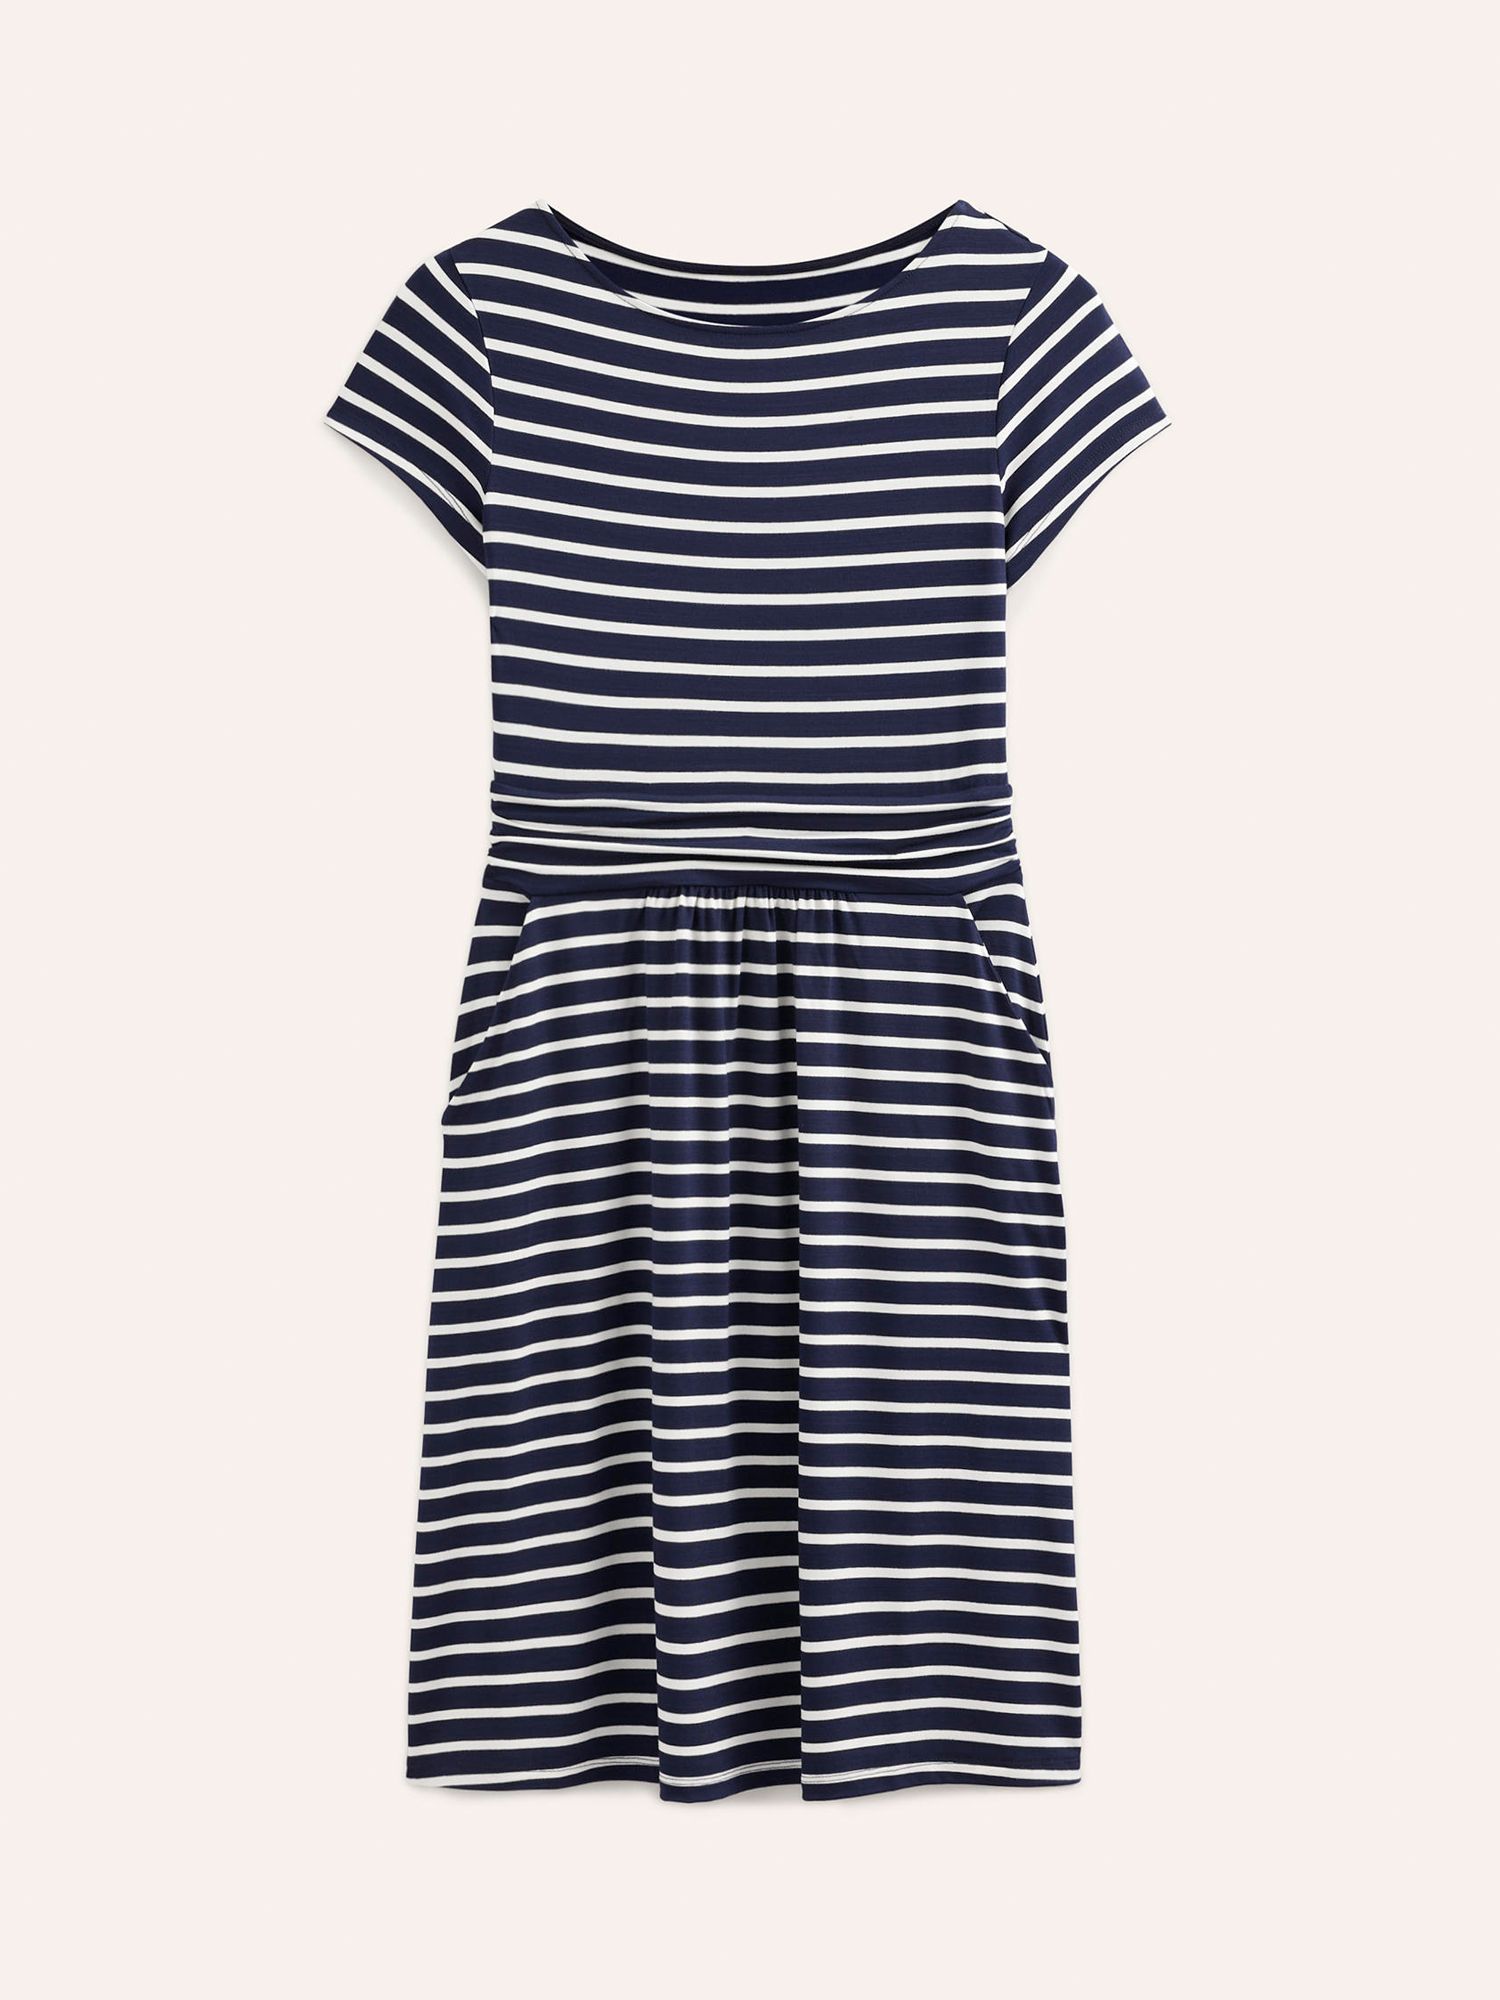 Boden Amelie Stripe Jersey Dress, Navy/Ivory, 8